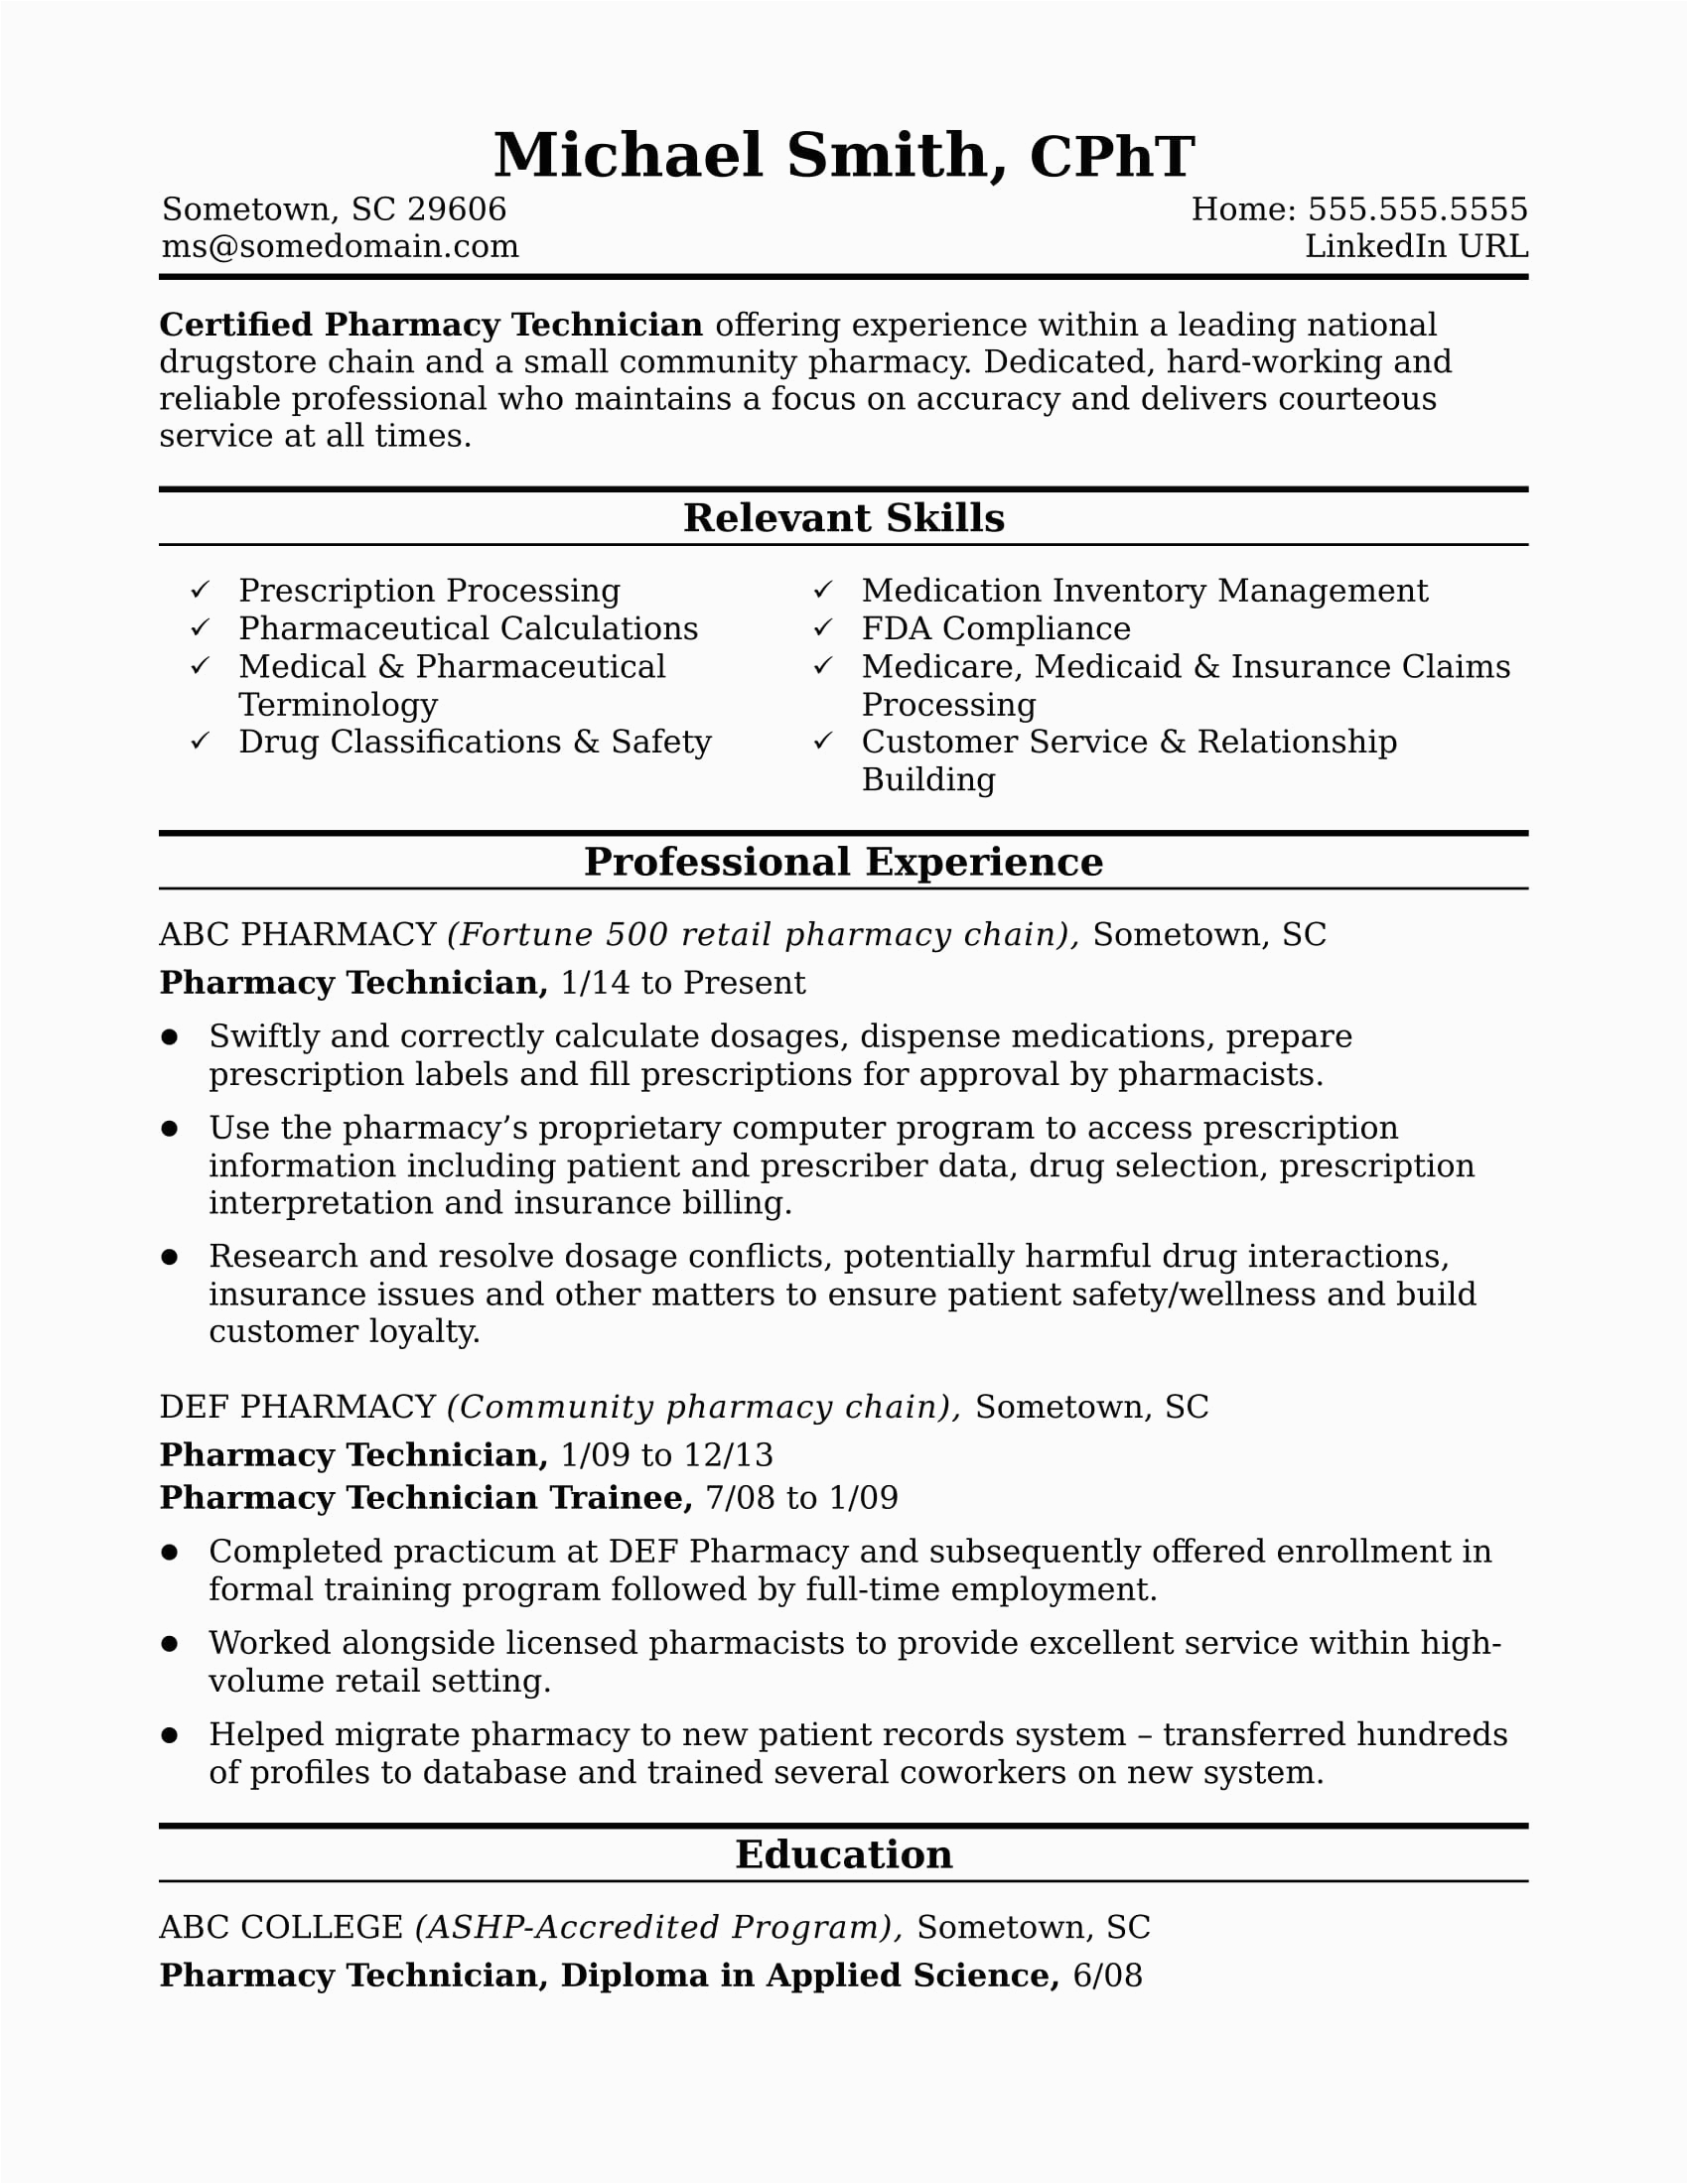 Sample Resume for Pharmacy Technician Entry Level Midlevel Pharmacy Technician Resume Sample